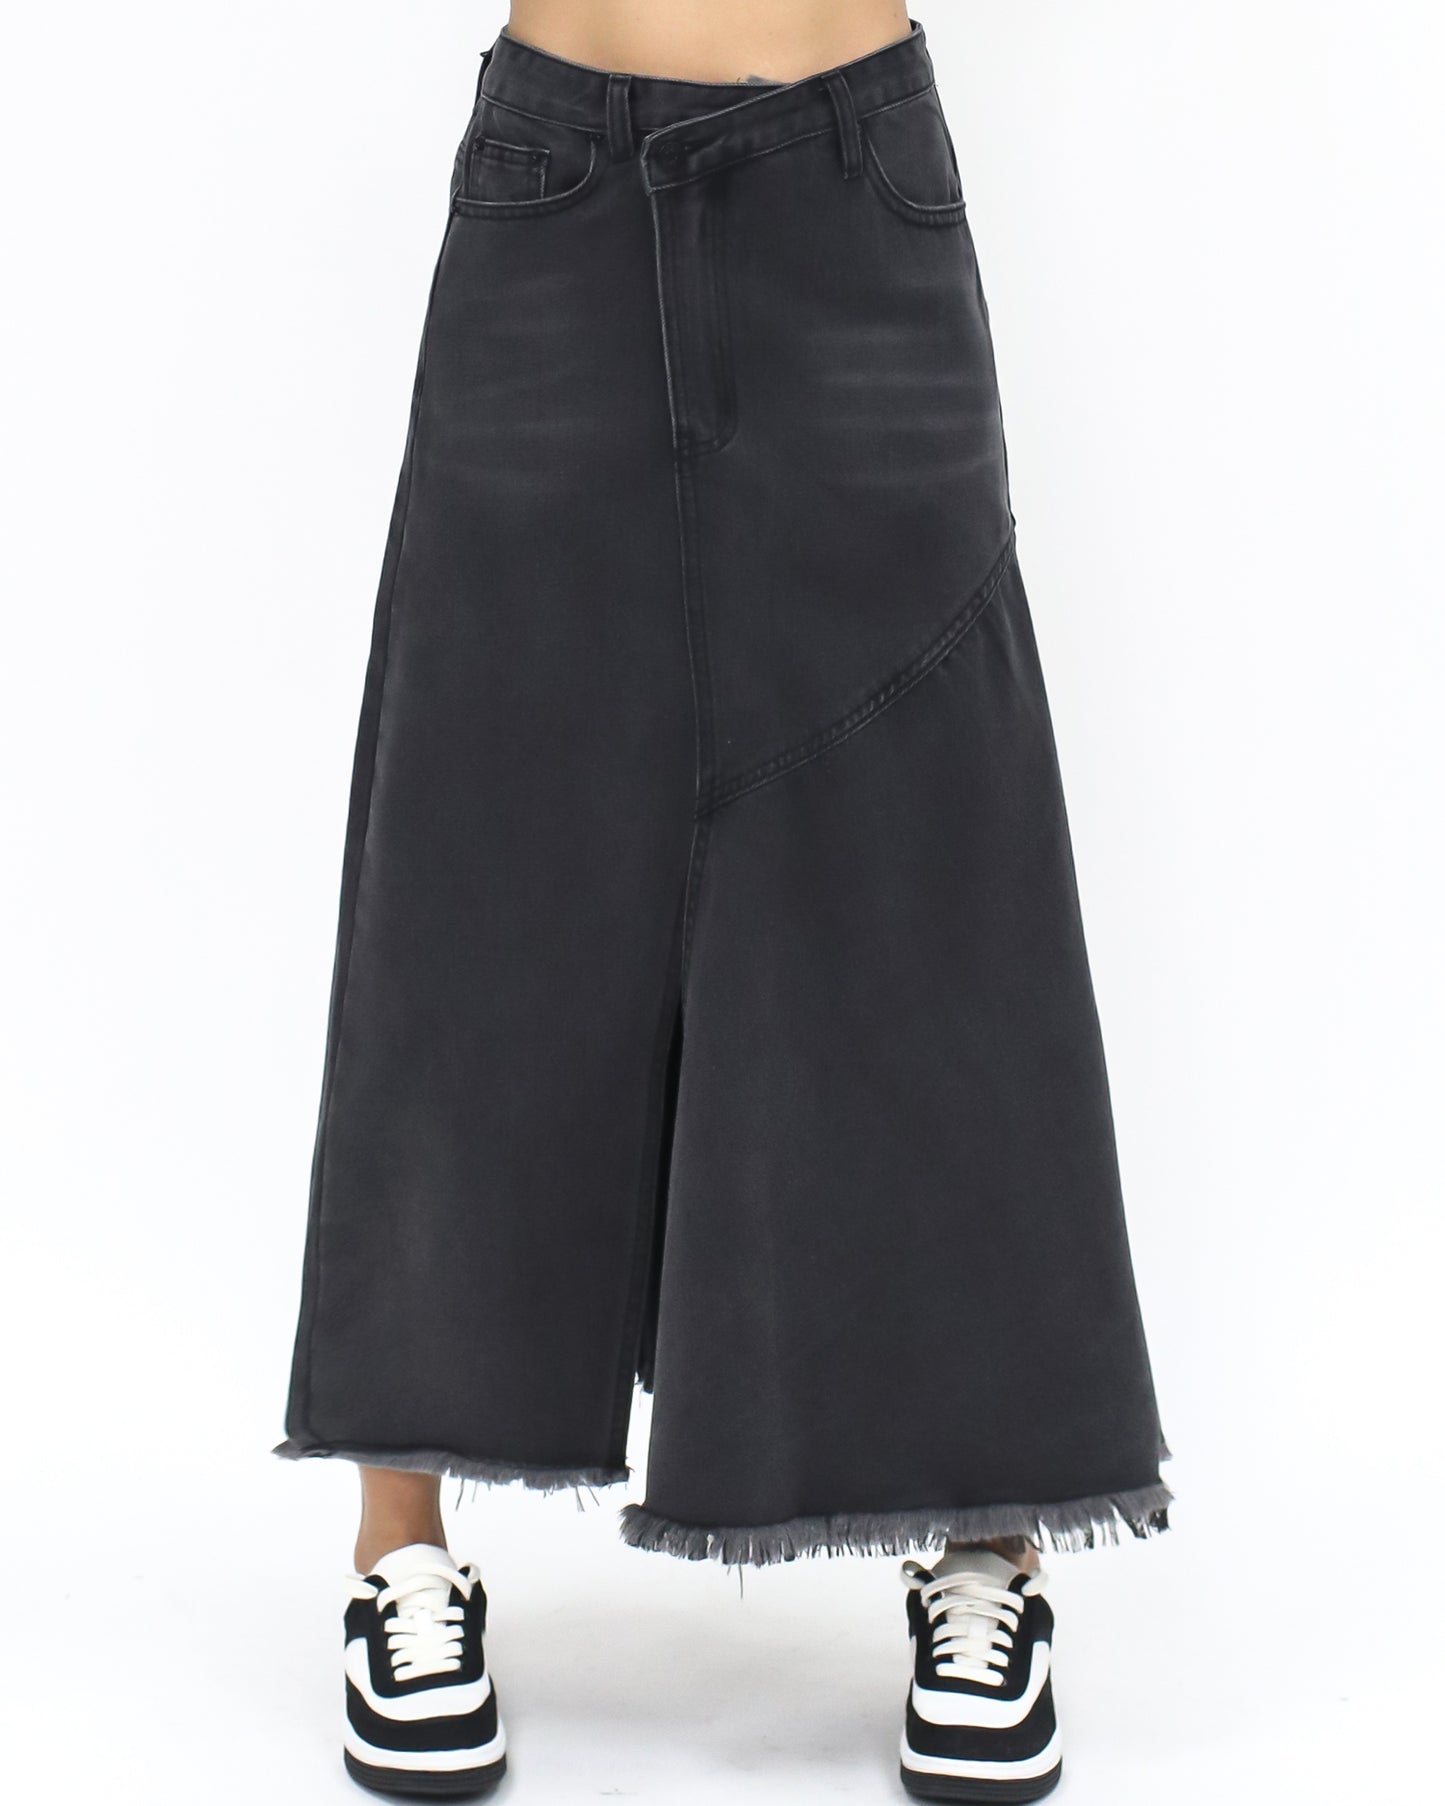 washed denim black frill skirt *pre-order*